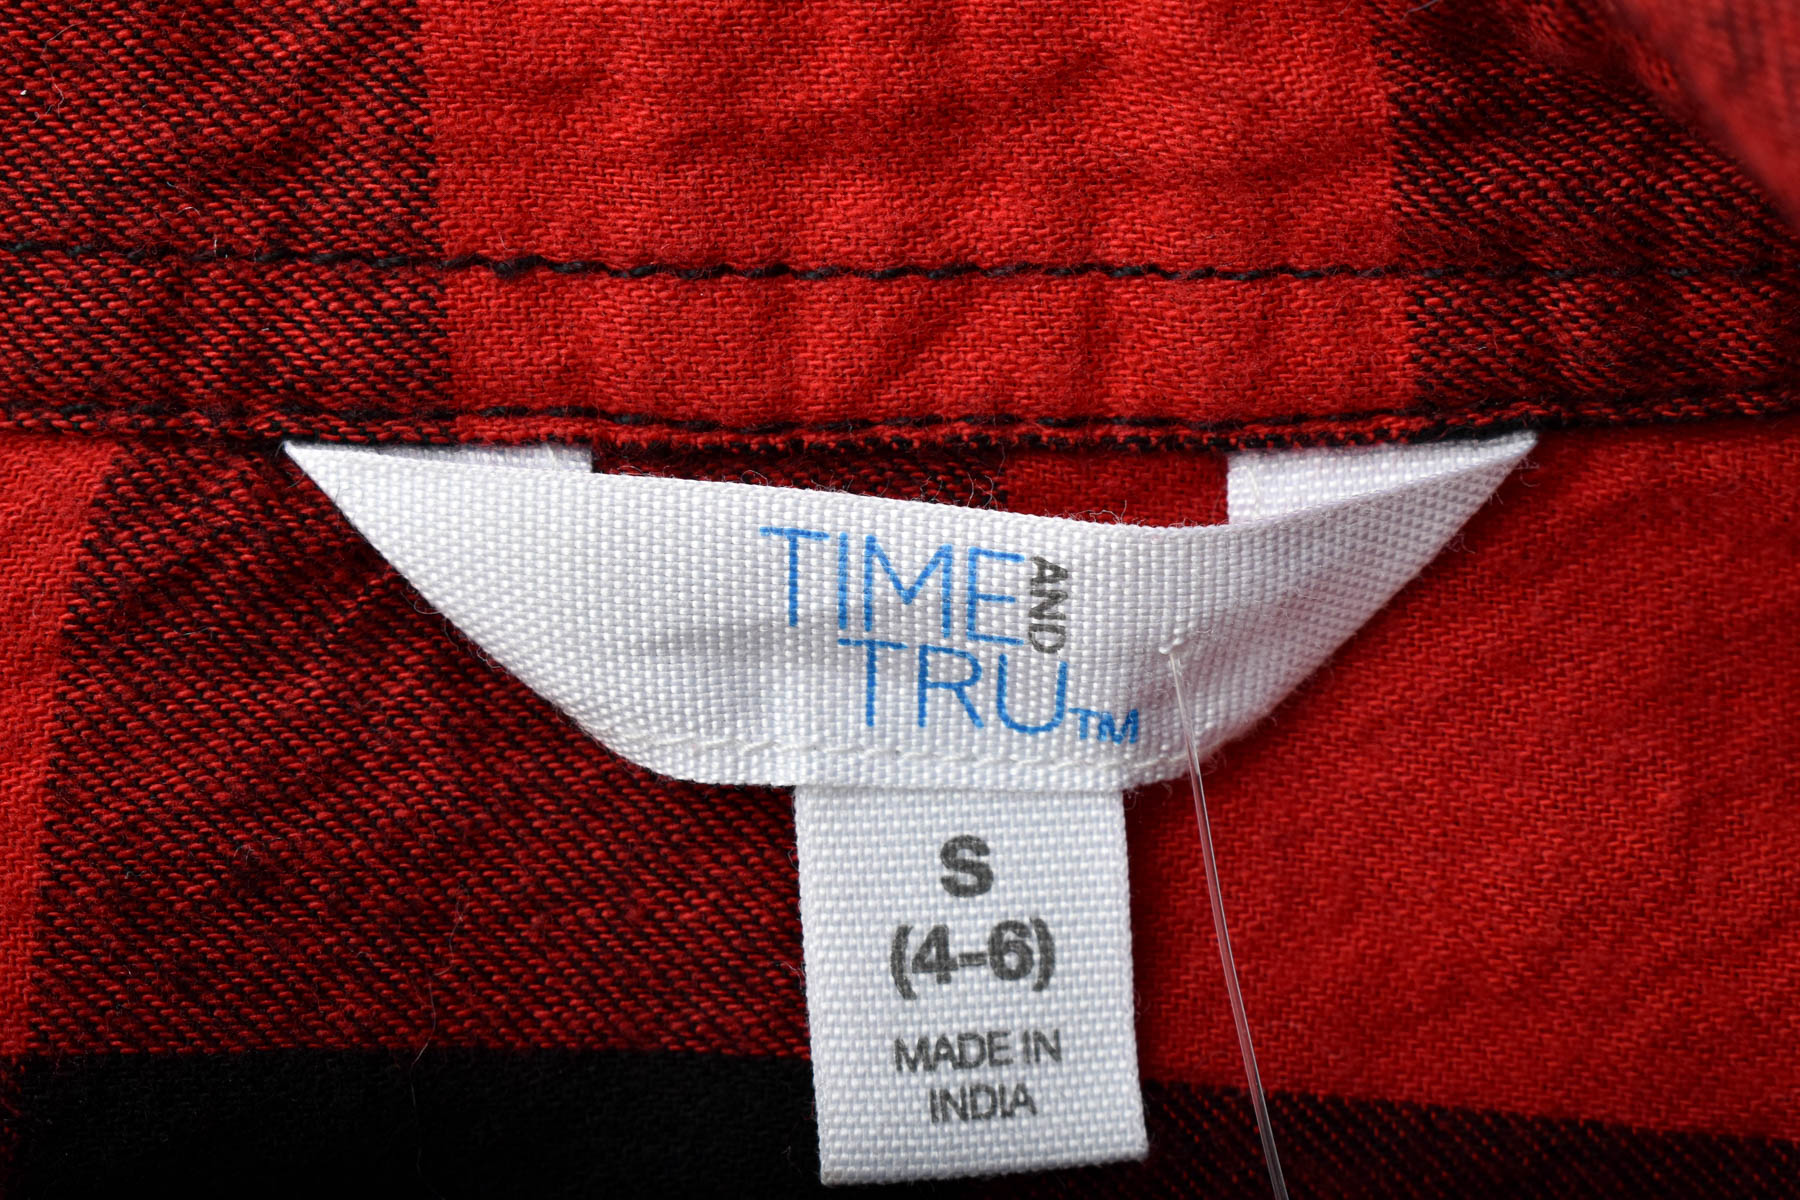 Γυναικείо πουκάμισο - TIME and TRU - 2